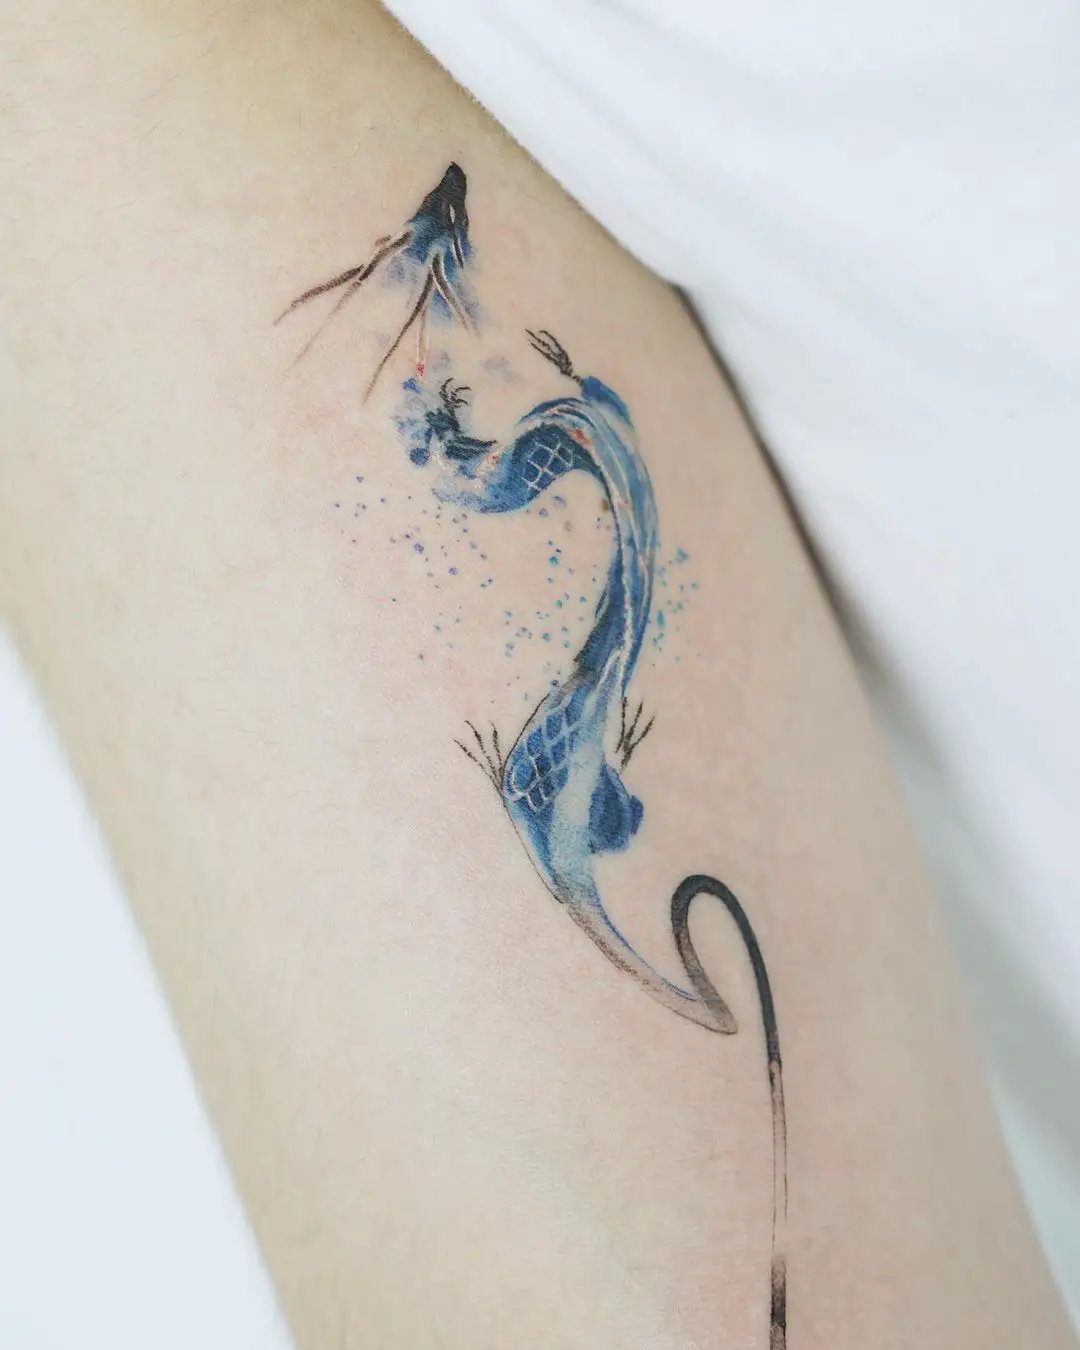 Simple dragon tattoo by indigo.yh